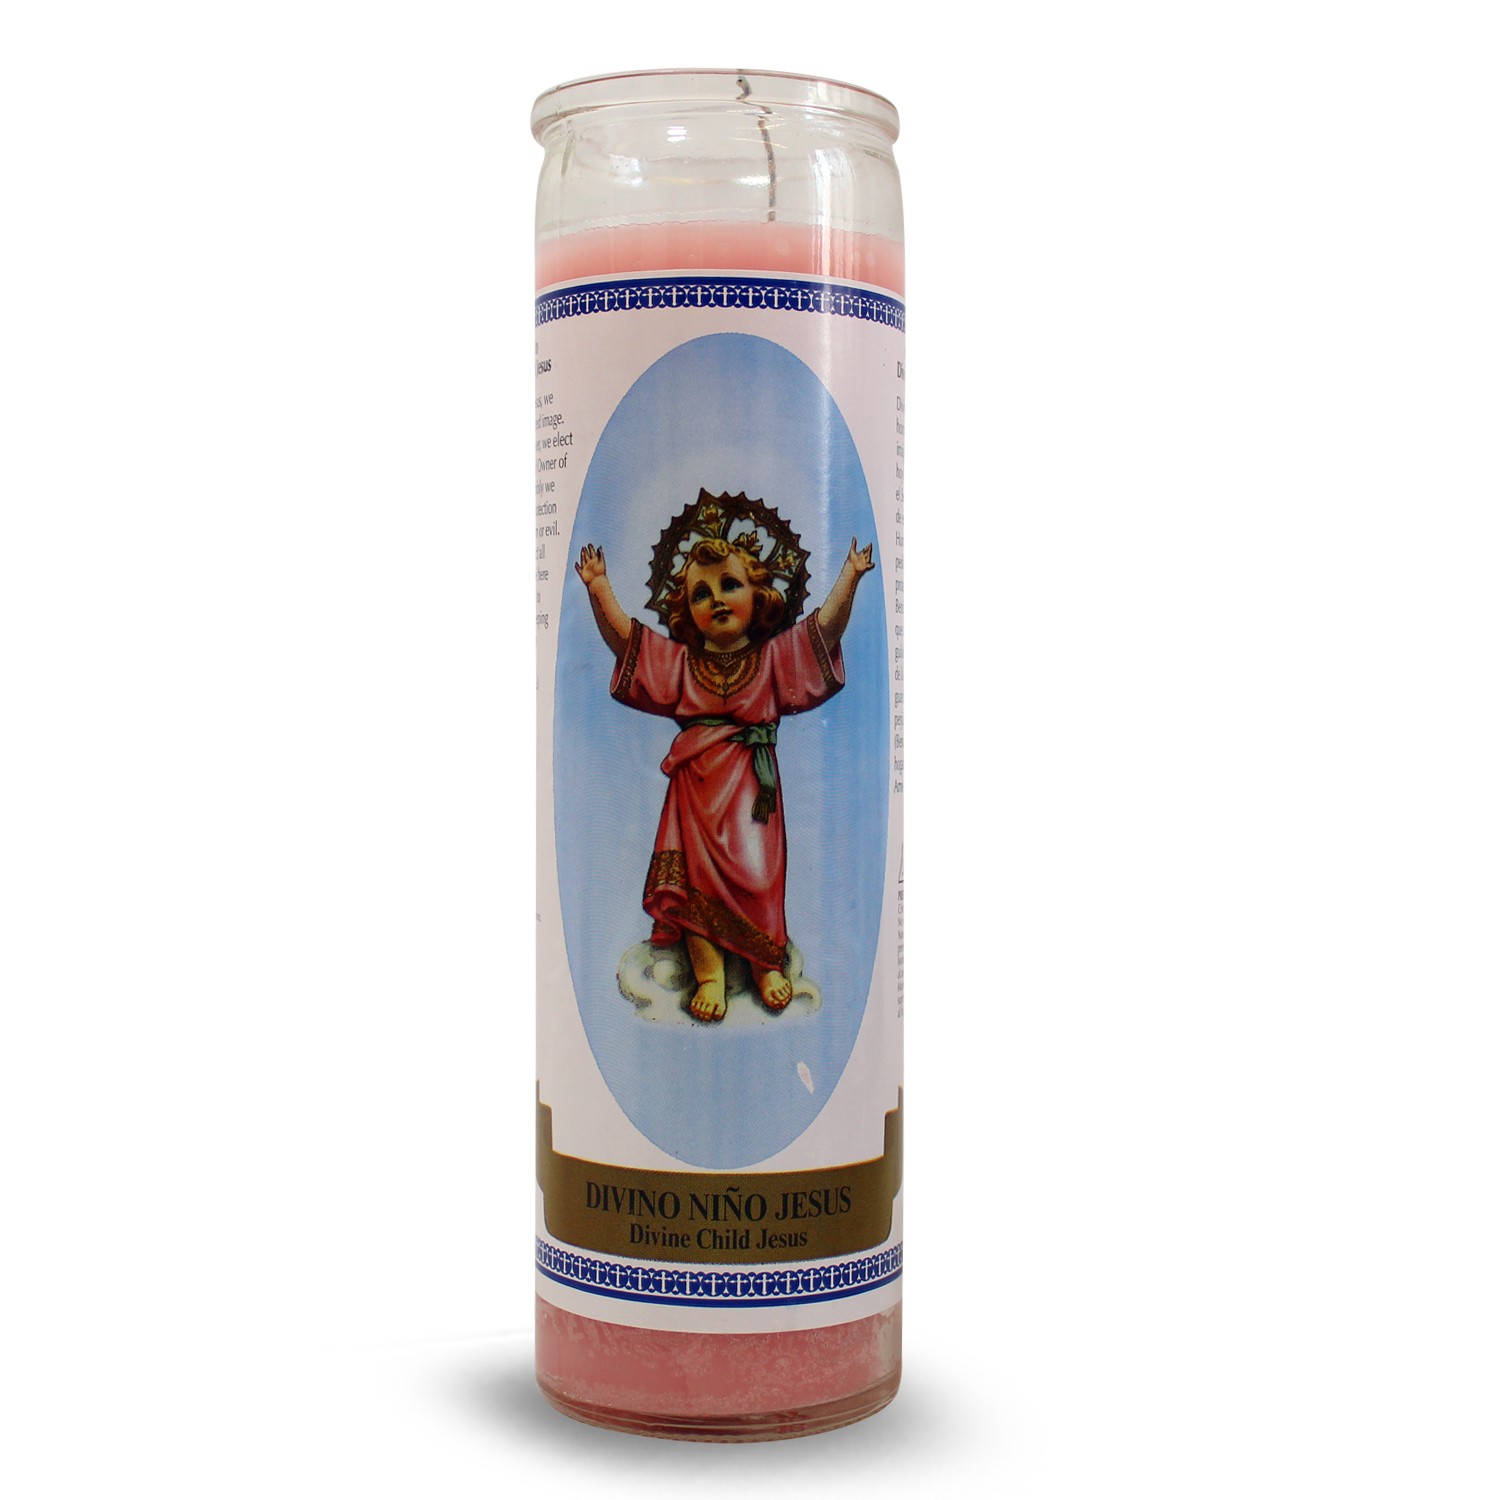 Bedruckte Kerze G-ttliches Kind Jesu unter Home & Living - Kerzen - Affirmation Kerzen